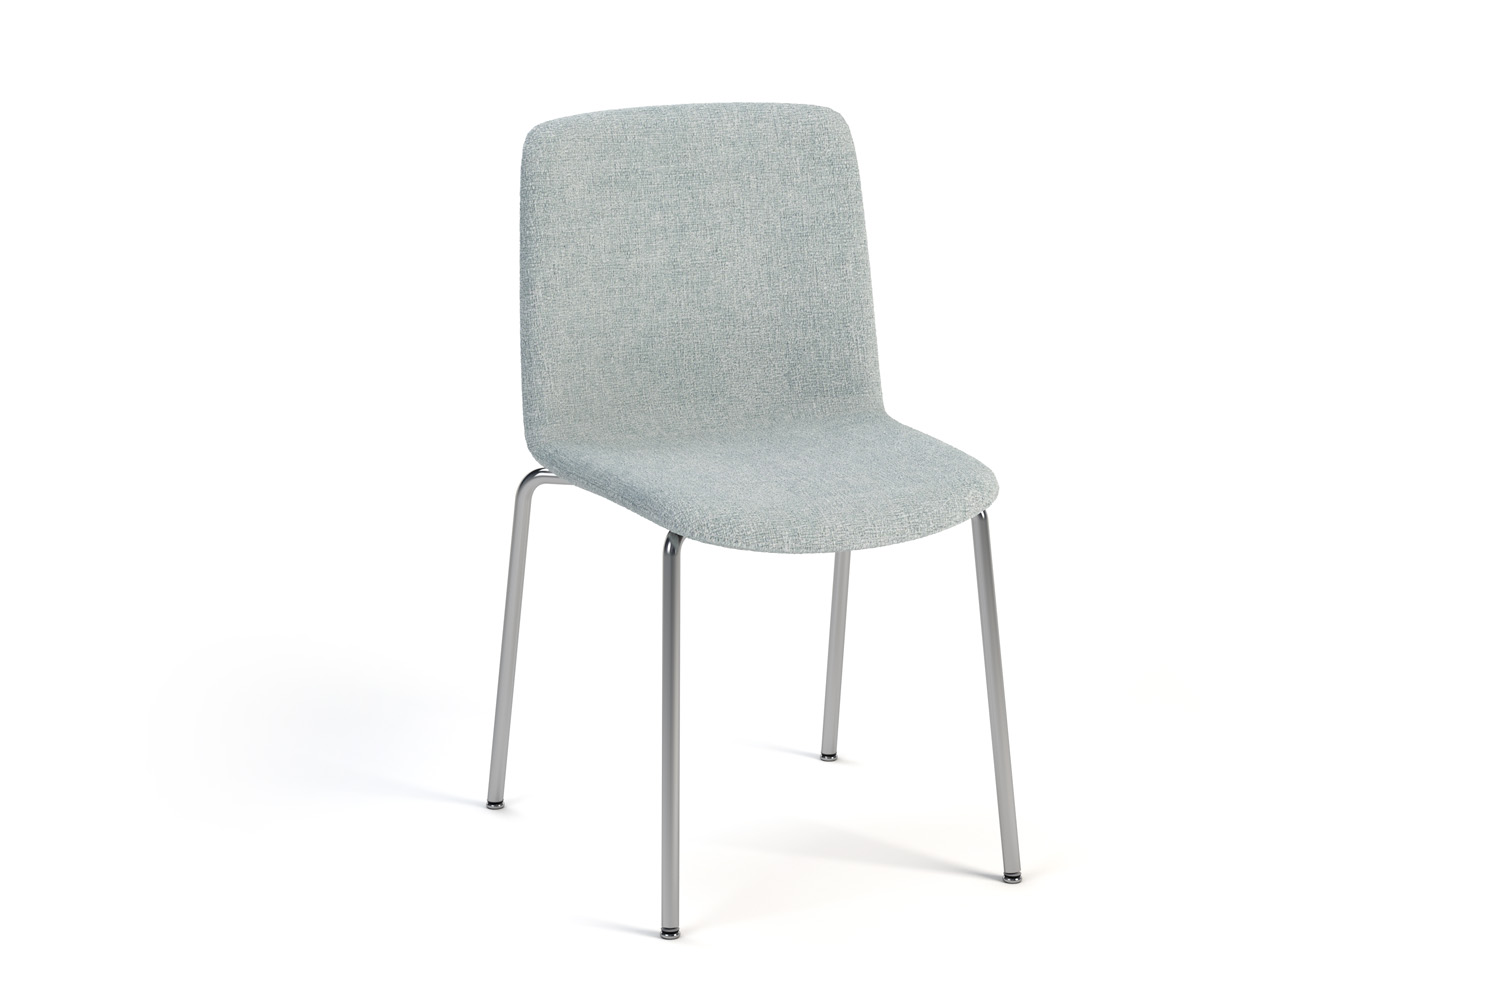 Vesper 4 Leg Chair Fully Upholstered